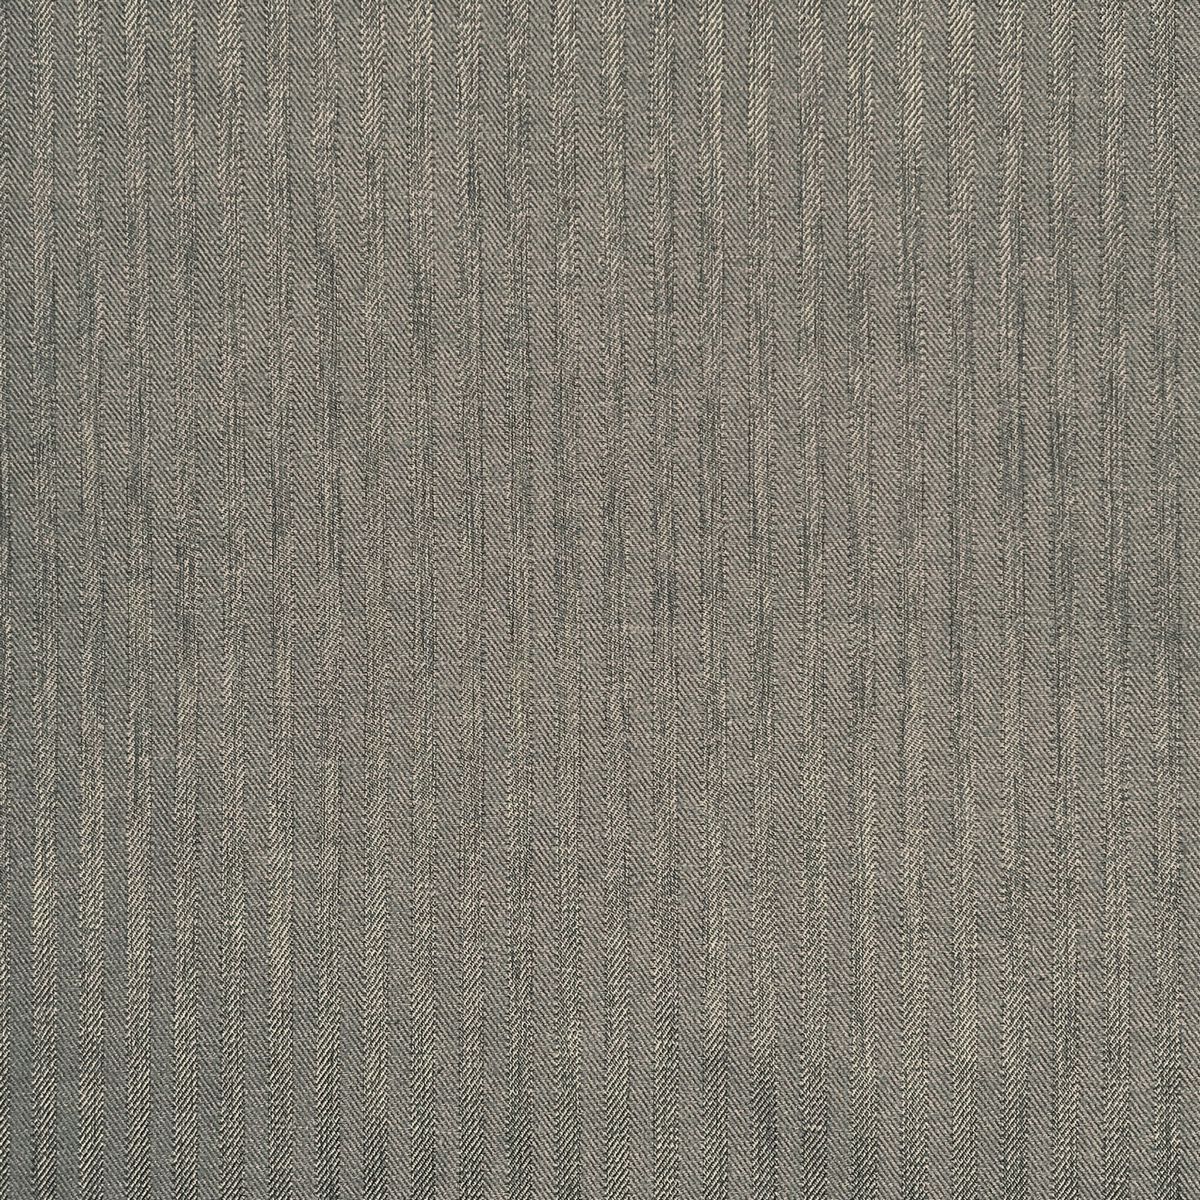 Moda Silver Pine Fabric by Chatham Glyn